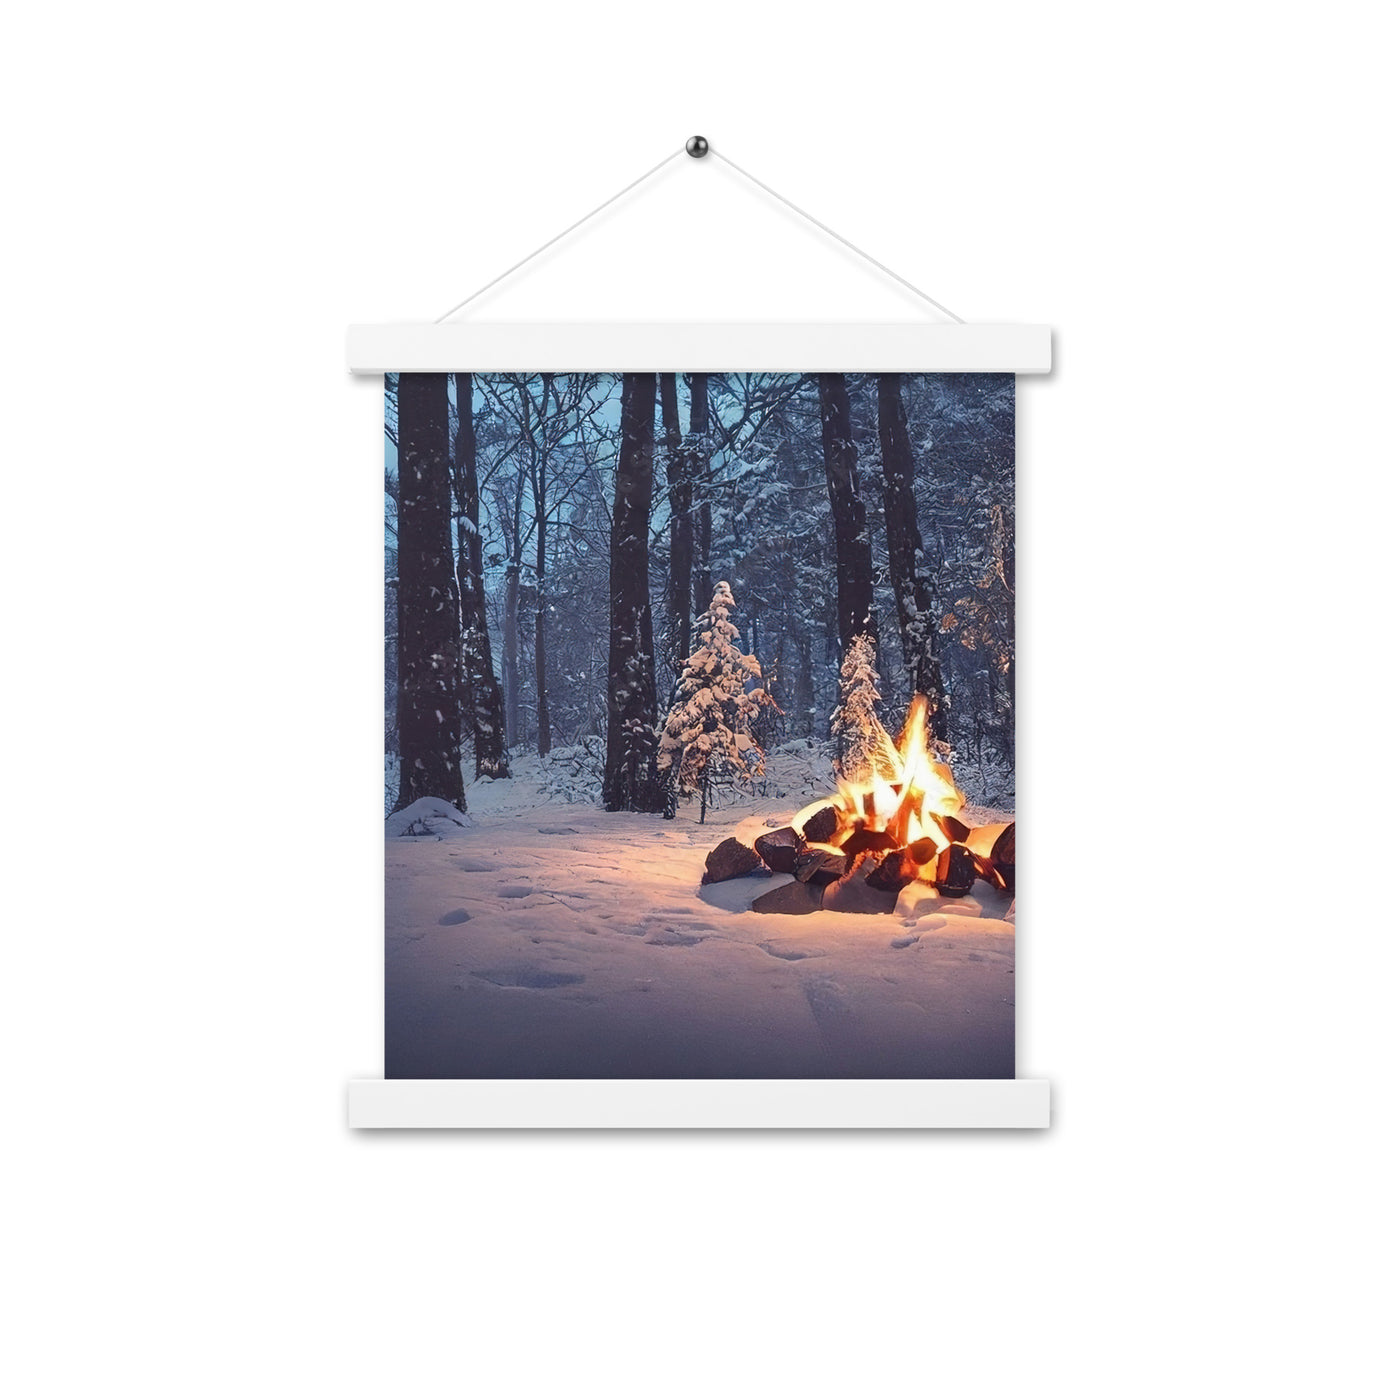 Lagerfeuer im Winter - Camping Foto - Premium Poster mit Aufhängung camping xxx 27.9 x 35.6 cm